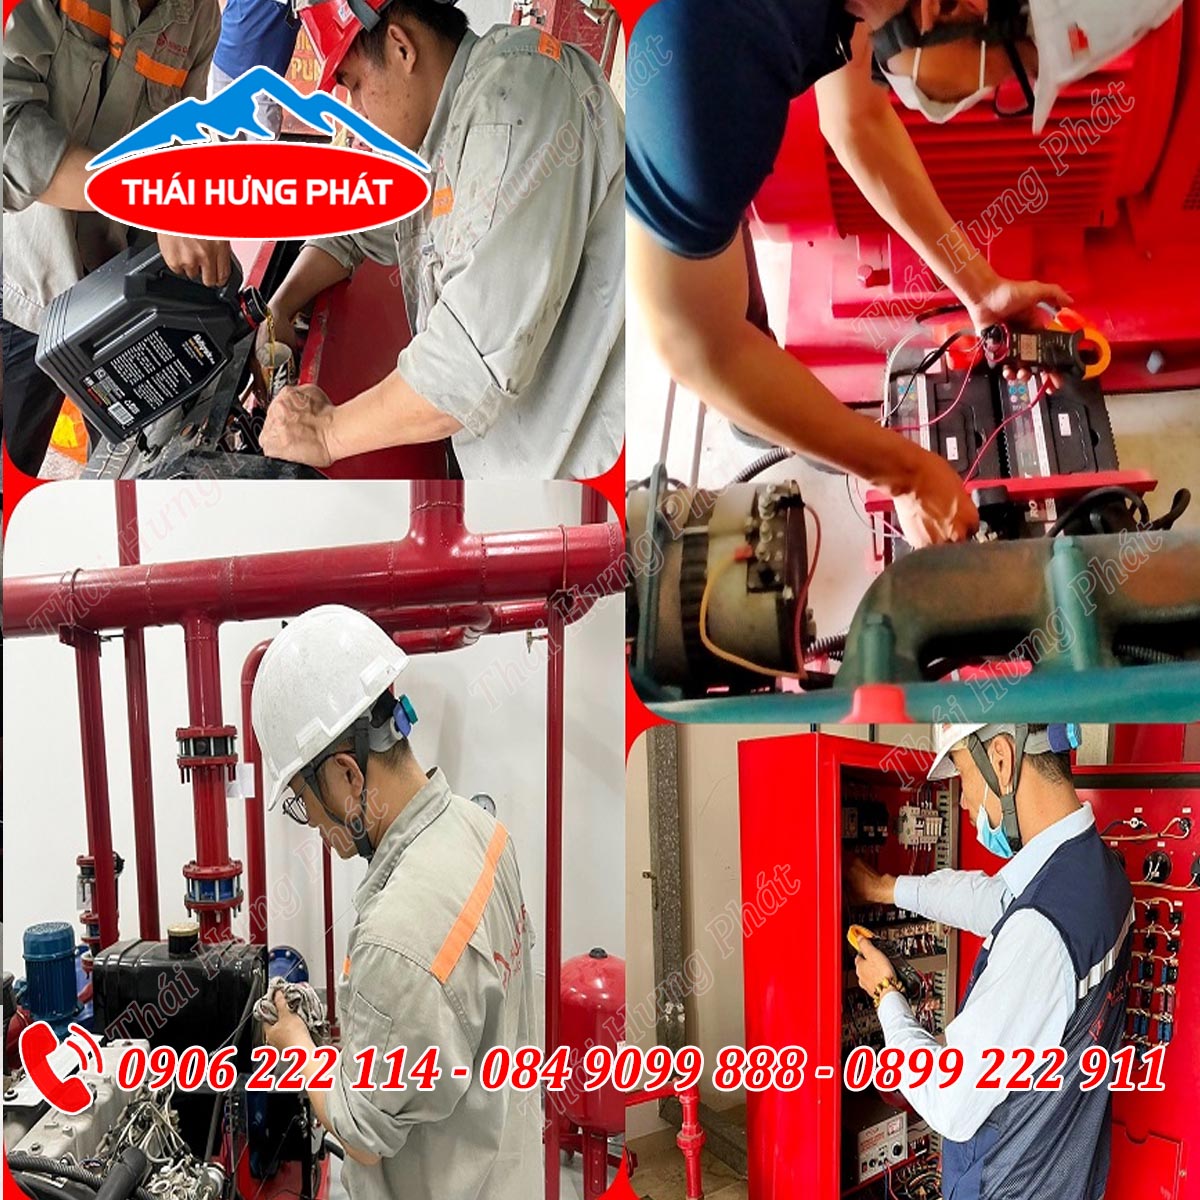 Hướng dẫn quy trình bảo trì hệ thống máy bơm chữa cháy